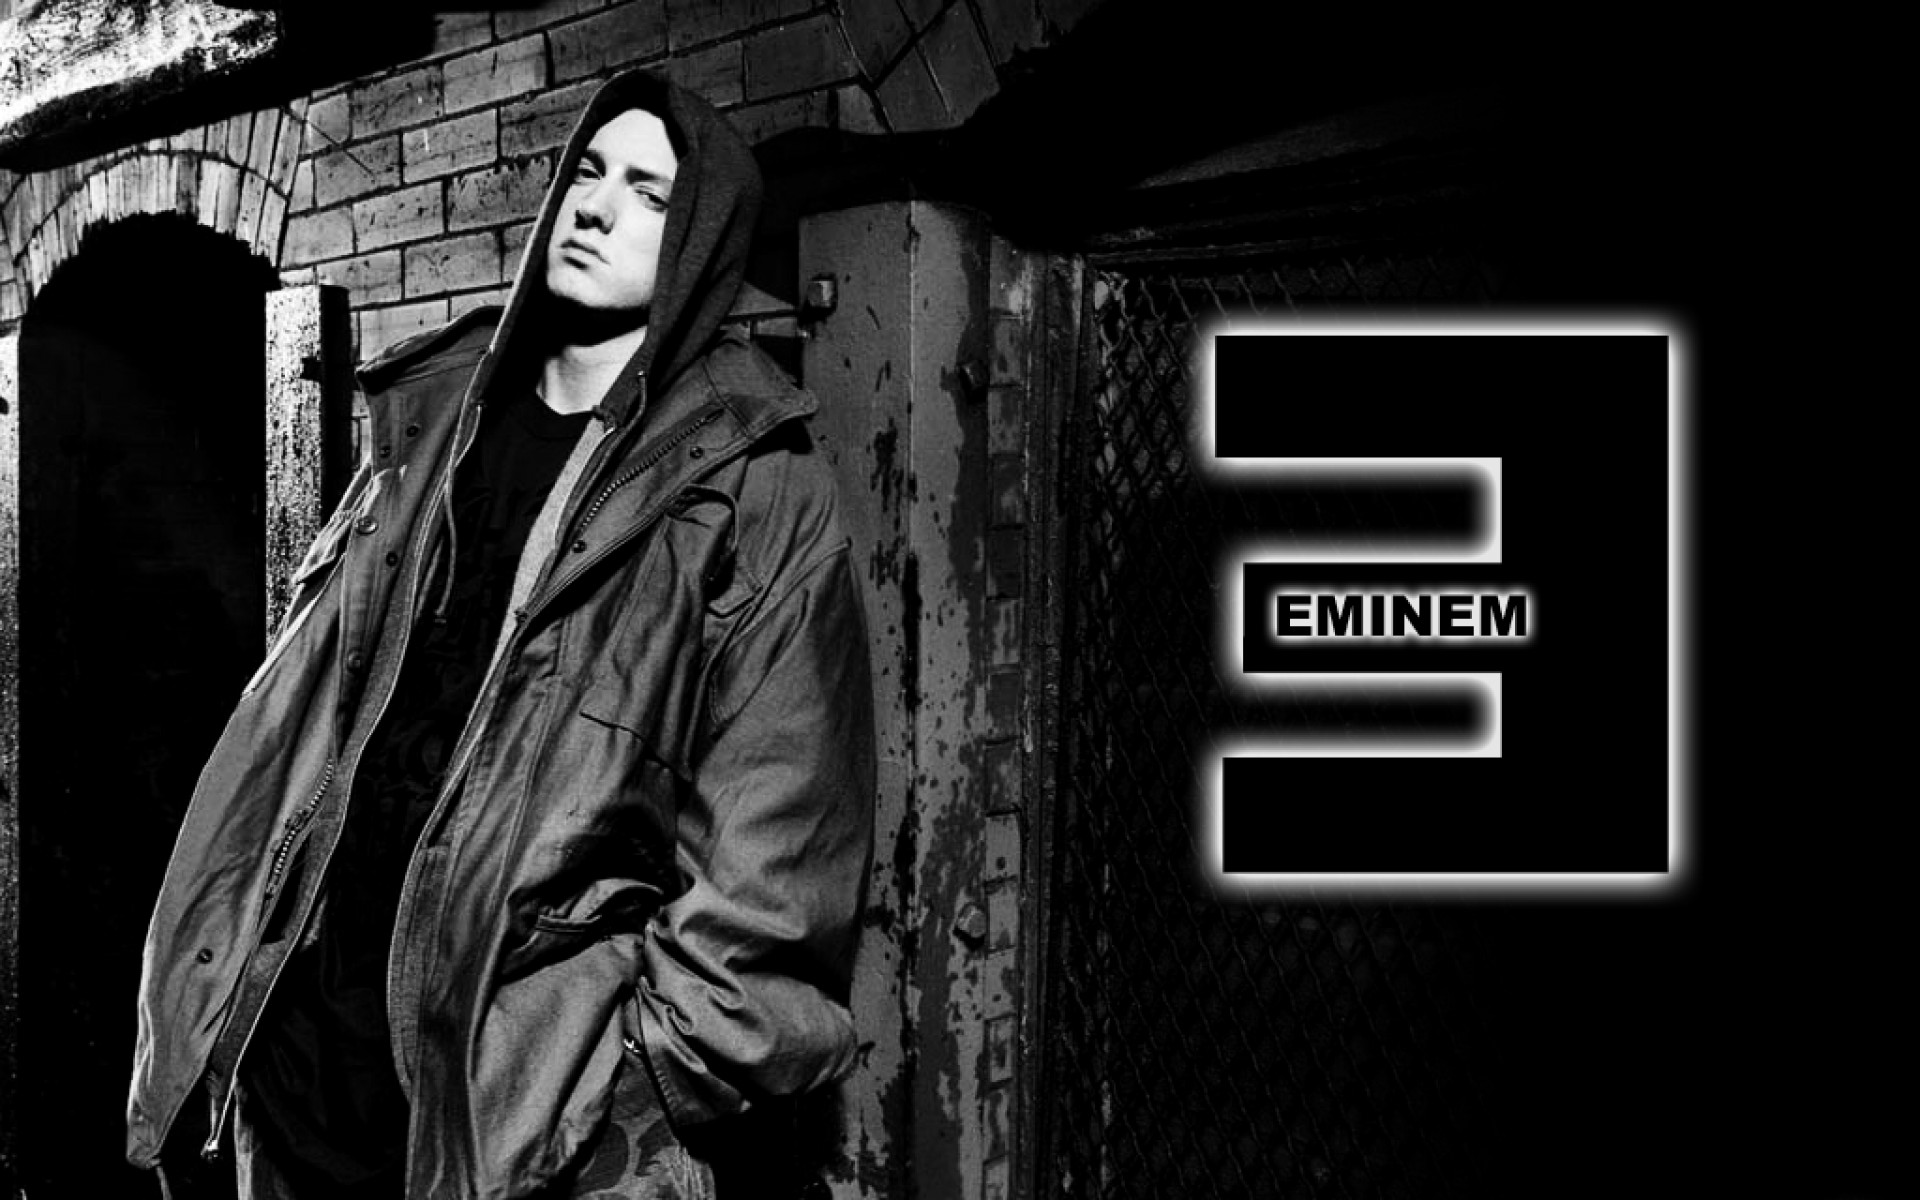 Free Download Eminem 8 Mile Wallpaper 19201200 21418 Hd Wallpaper Res 1920x1200 1920x1200 For Your Desktop Mobile Tablet Explore 46 Eminem 8 Mile Wallpaper Eminem Wallpapers Hd